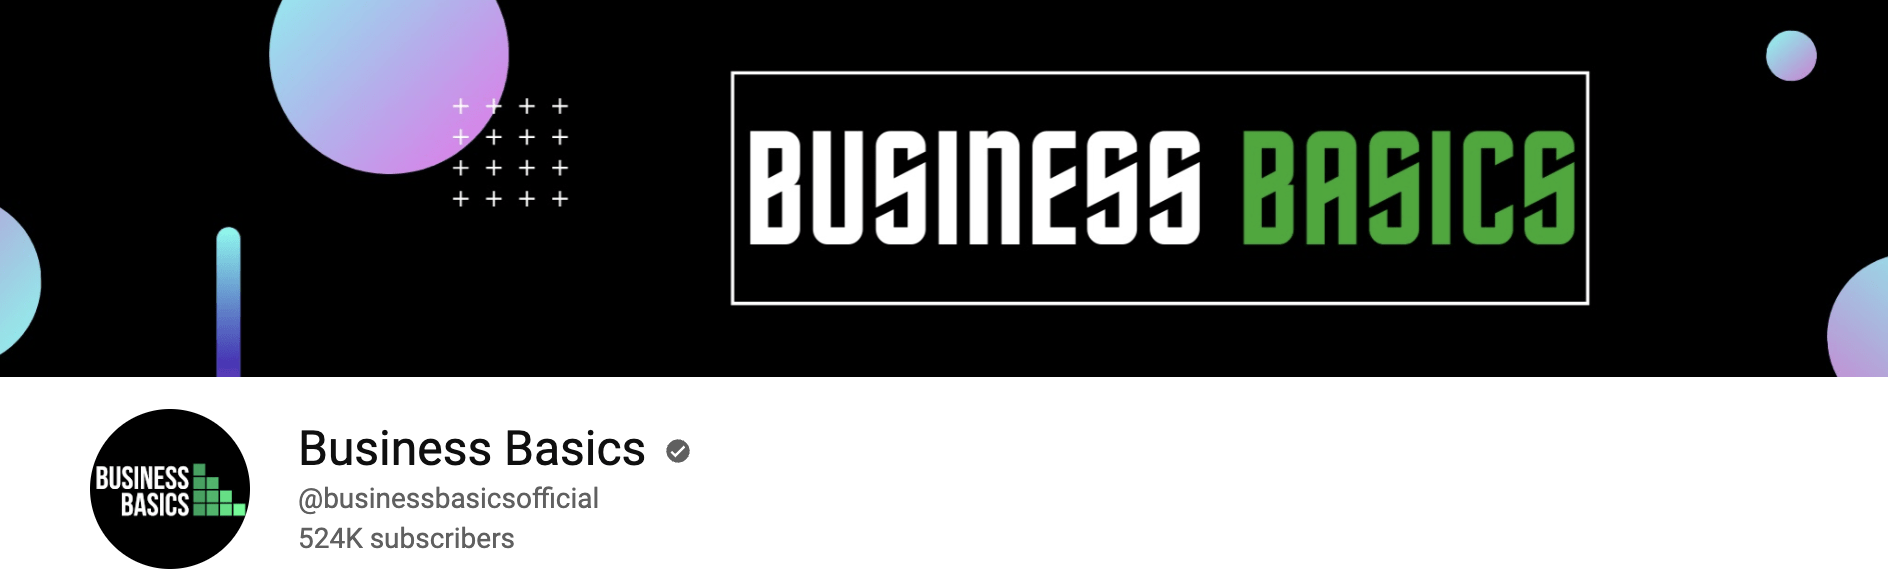 Business basic youtube